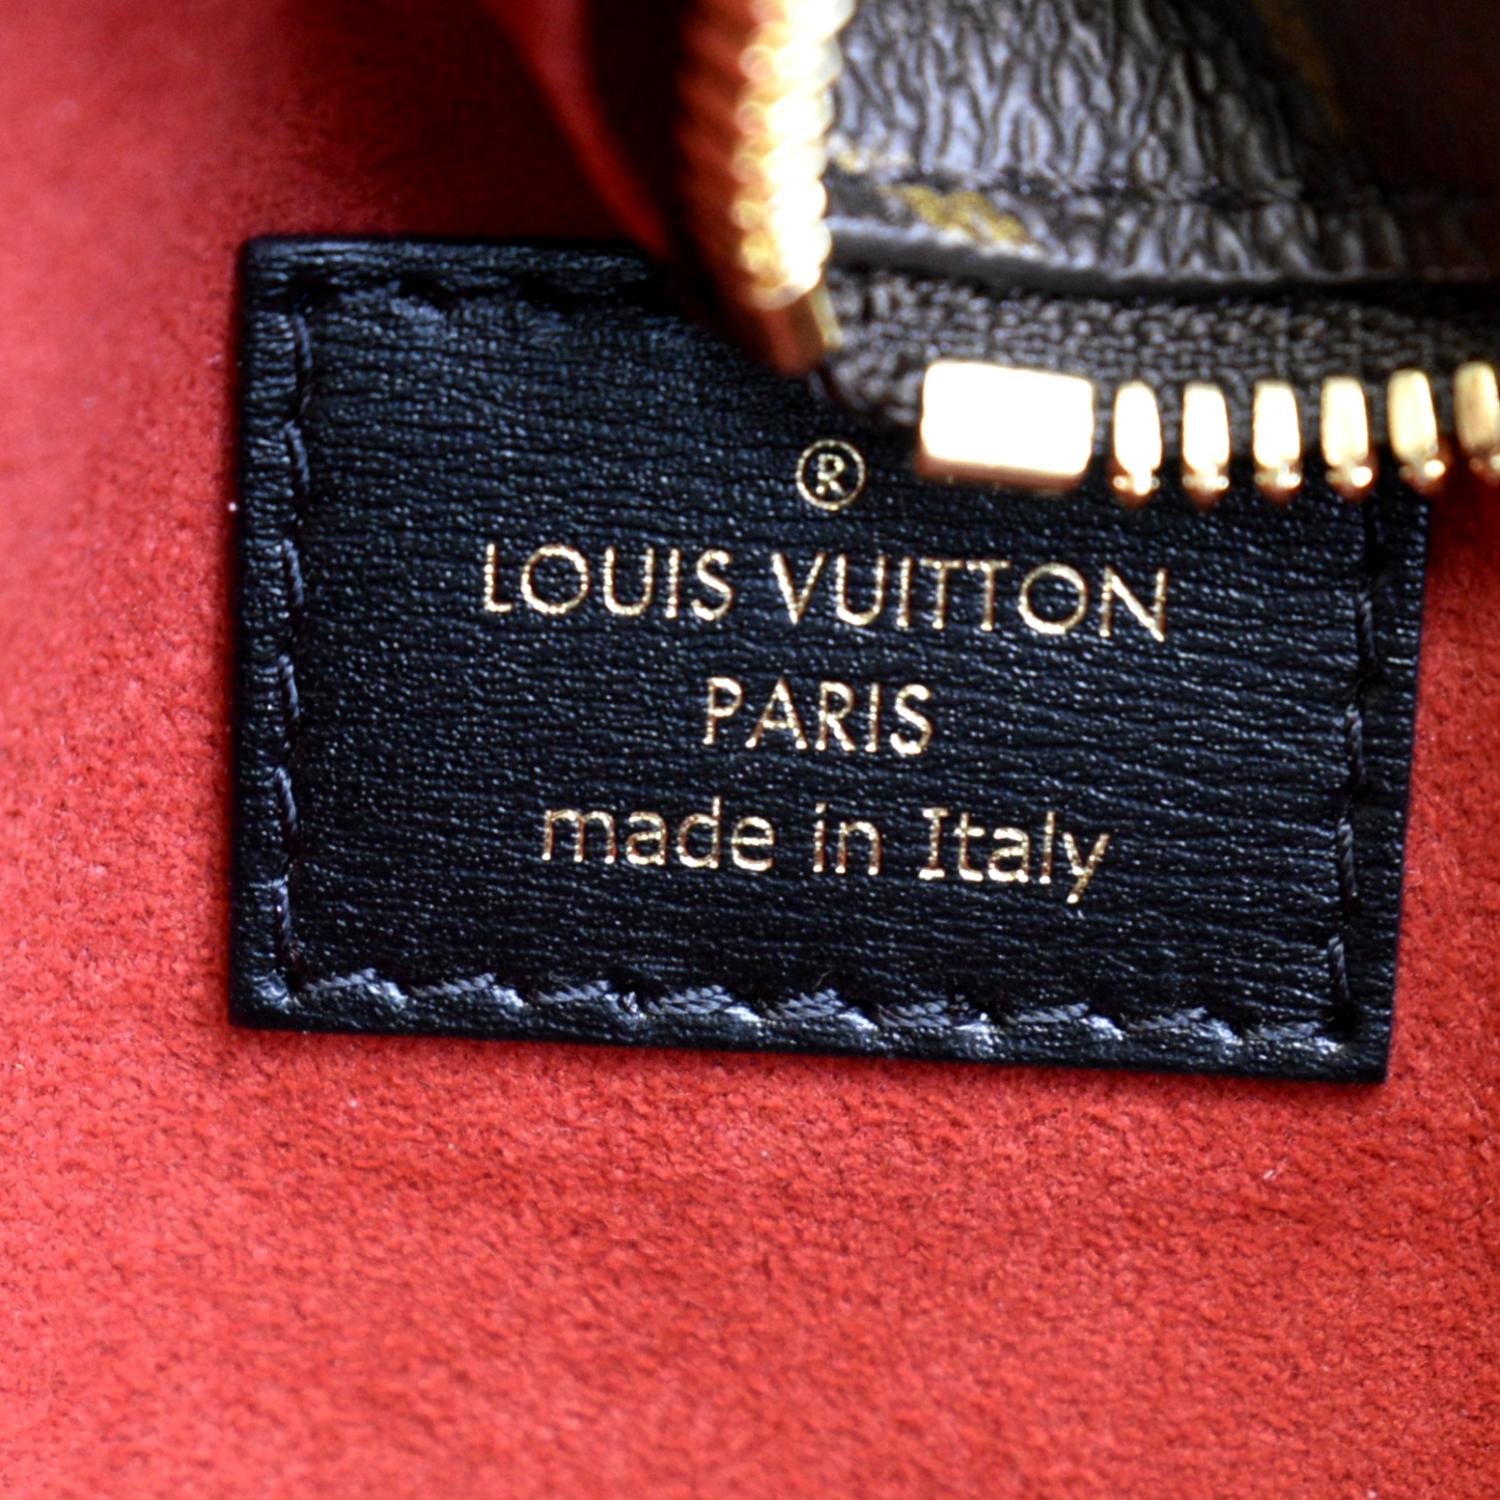 MA - Louis Vuitton Game on Coeur BD 480